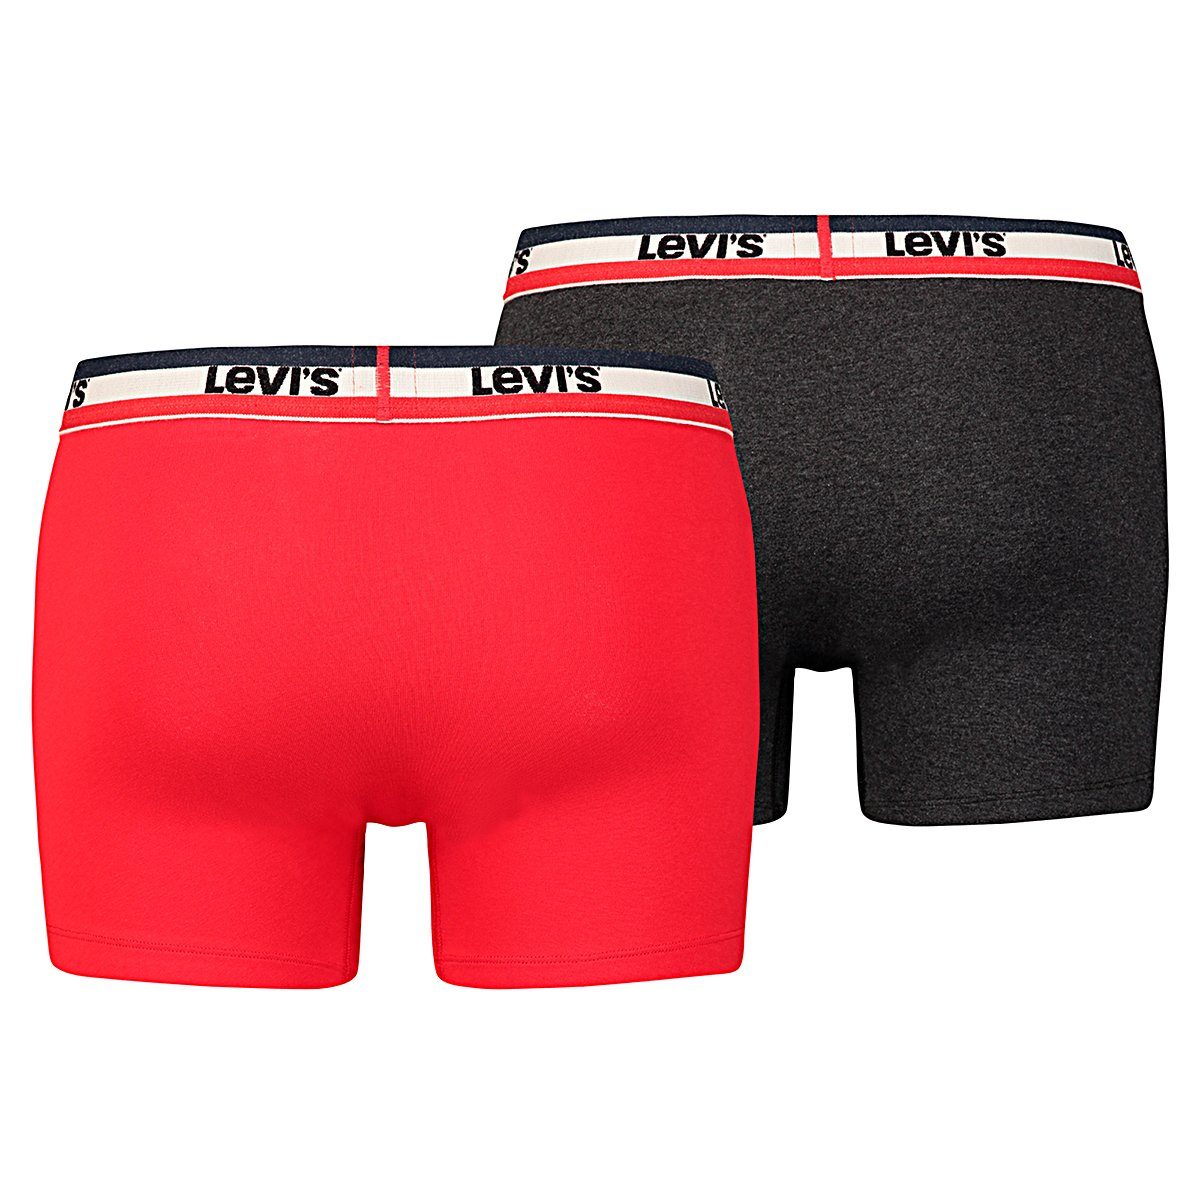 Levi's® / Brief 2P Boxershorts Levis Black Boxer - 786 Red